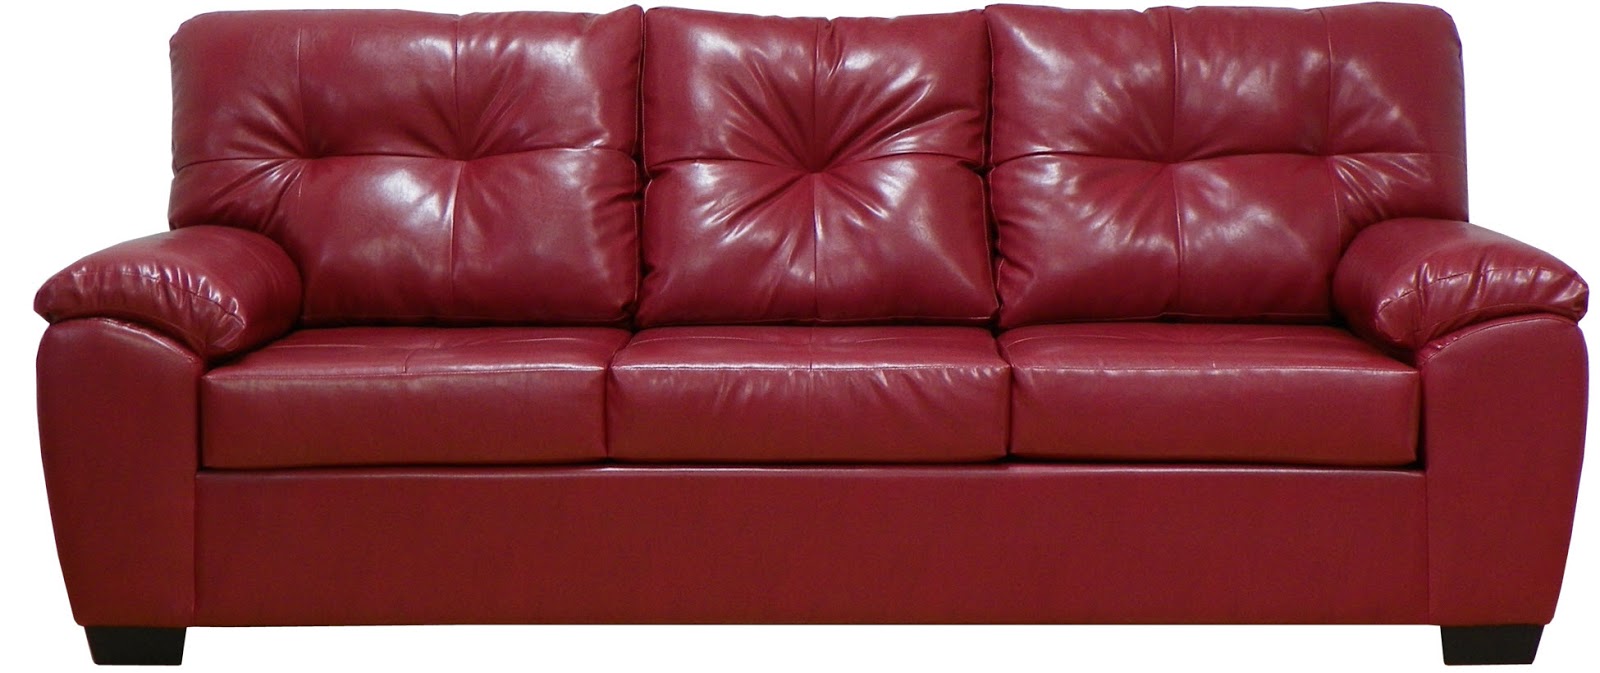 Leather sofa Dubai